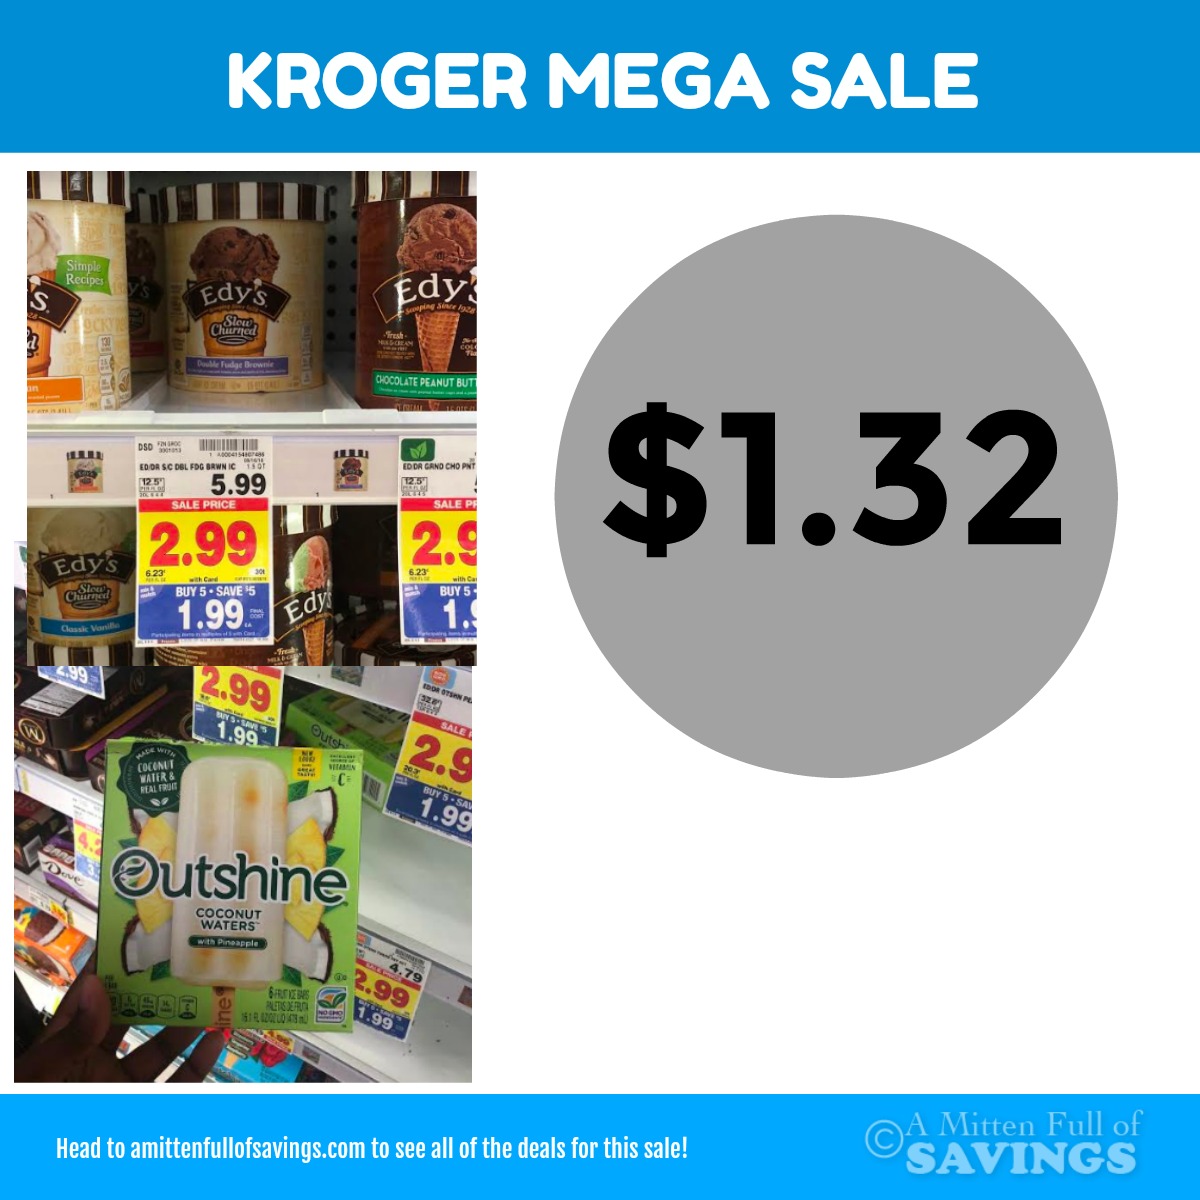 Kroger MEGA: Edy's + Outshine Frozen Treats $1.32